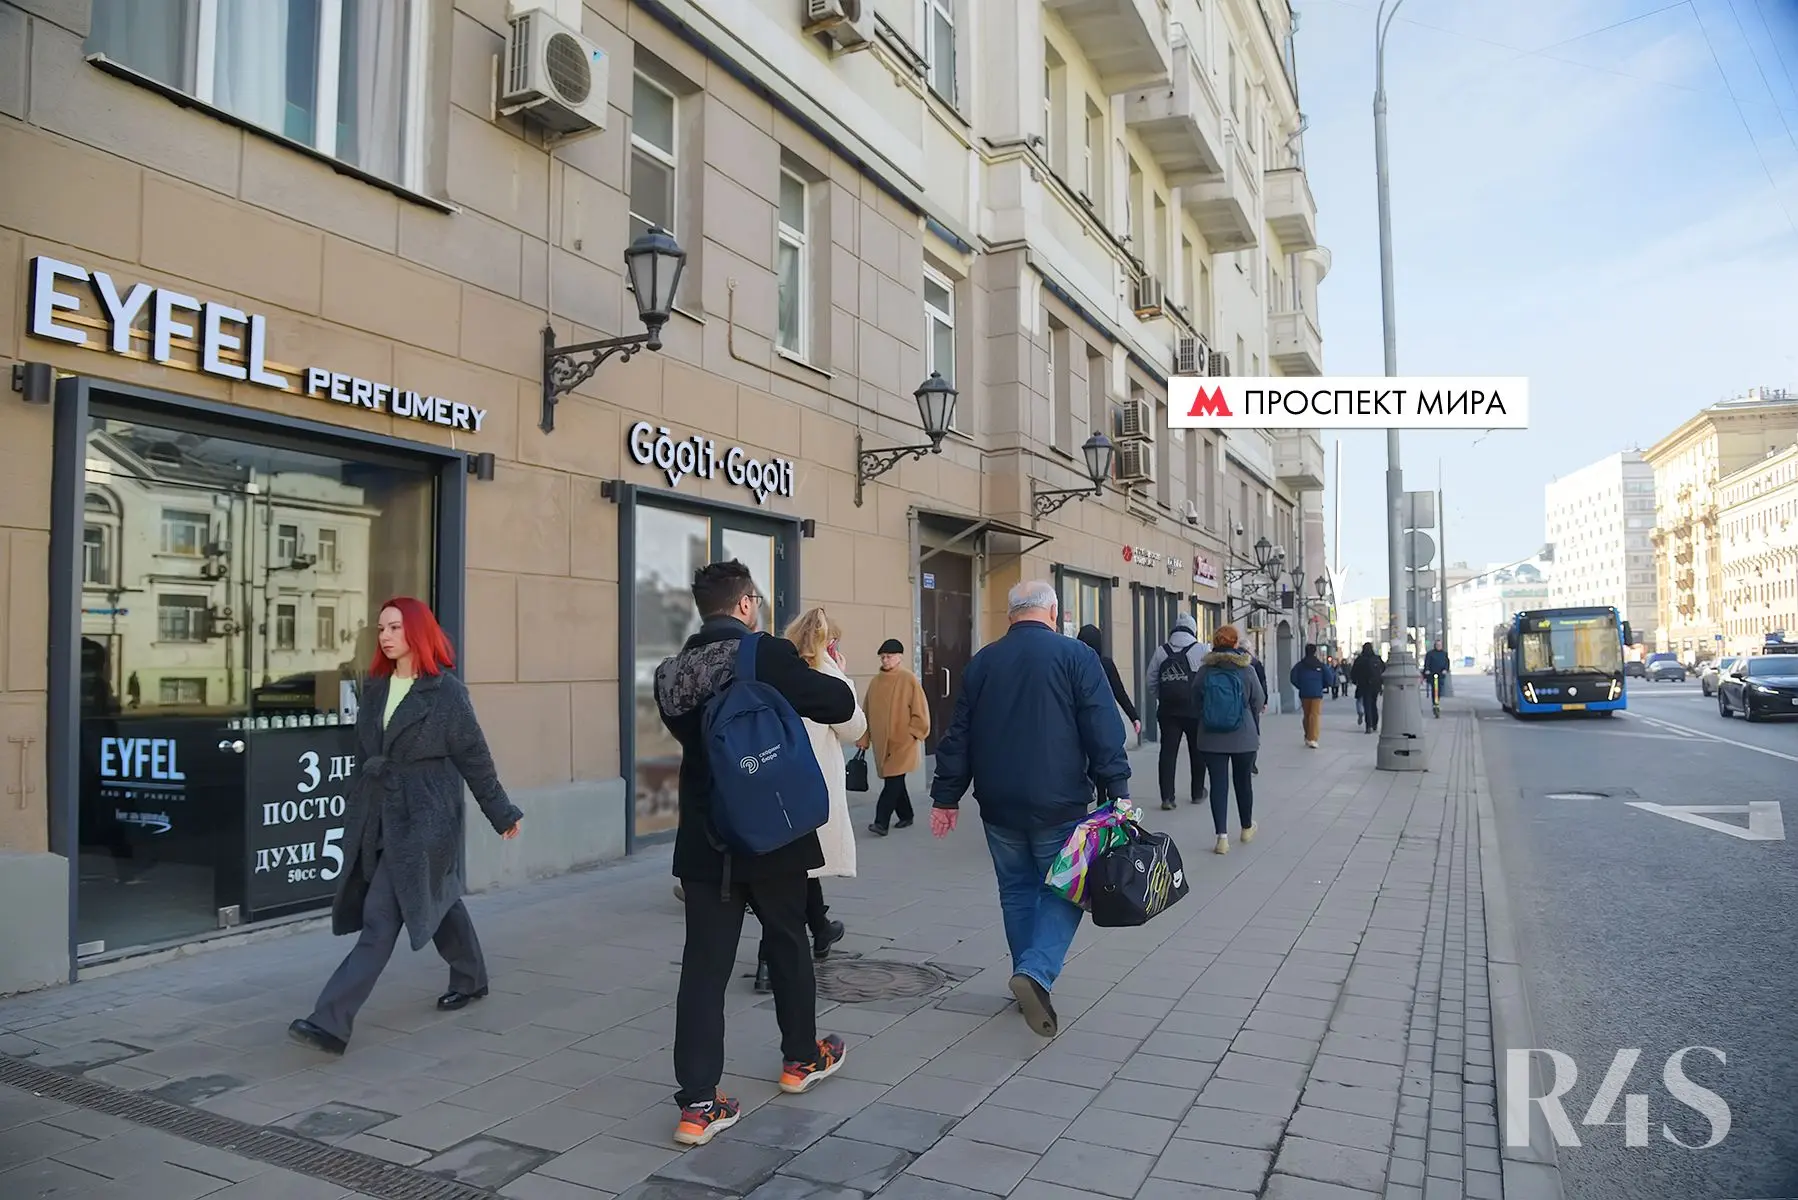 Аренда торгового помещения площадью 22.6 м2 в Москве: проспект Мира, 44 R4S | Realty4Sale